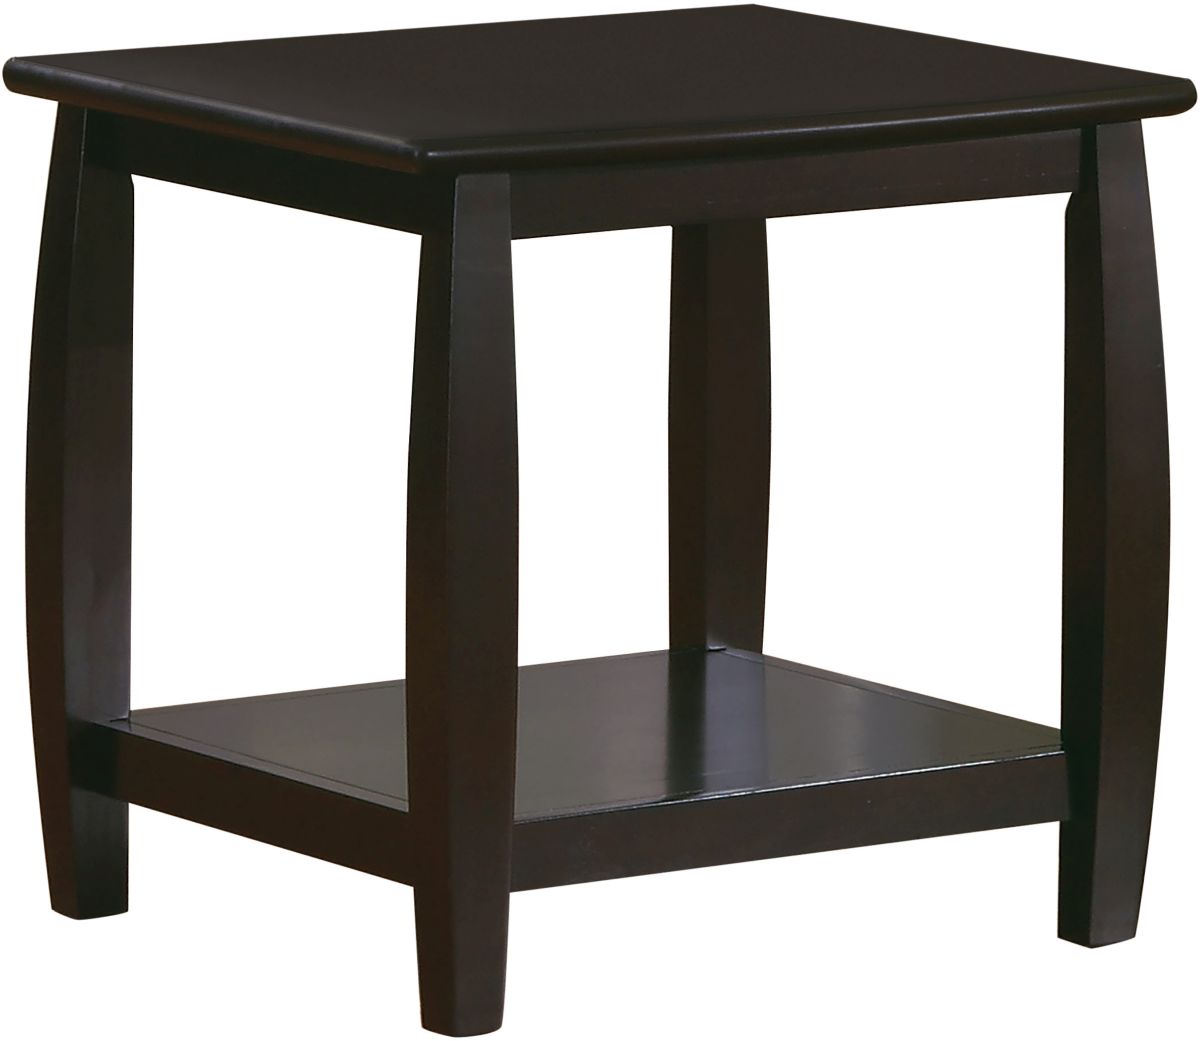 Coaster® Espresso Square End Table With Bottom Shelf